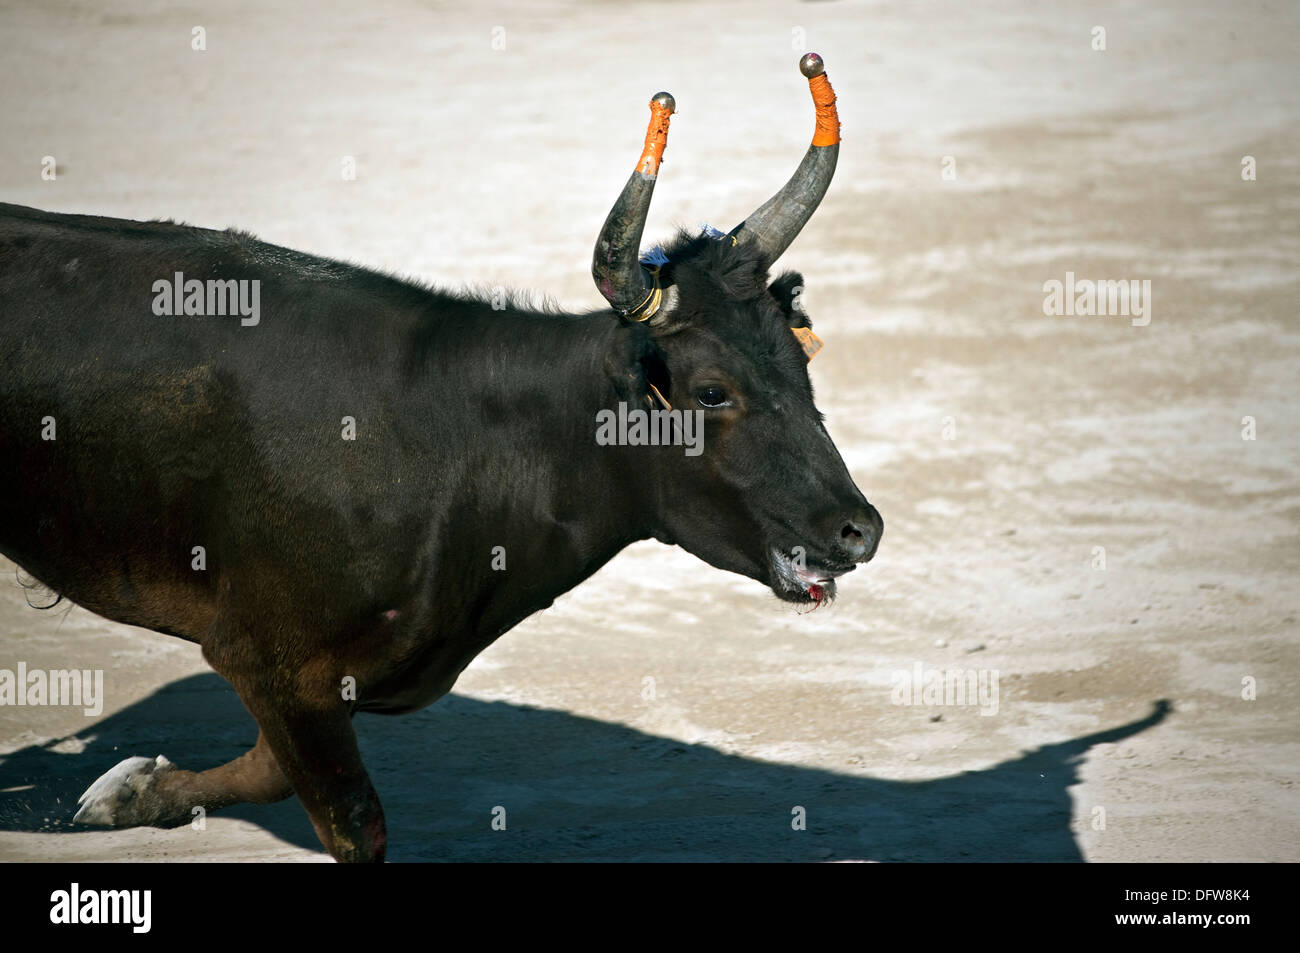 Le Français bull fighting,cours de la Tauromachie Camarguaise,Fontvieille France, bull, à pleine charge, David Collingwood Banque D'Images